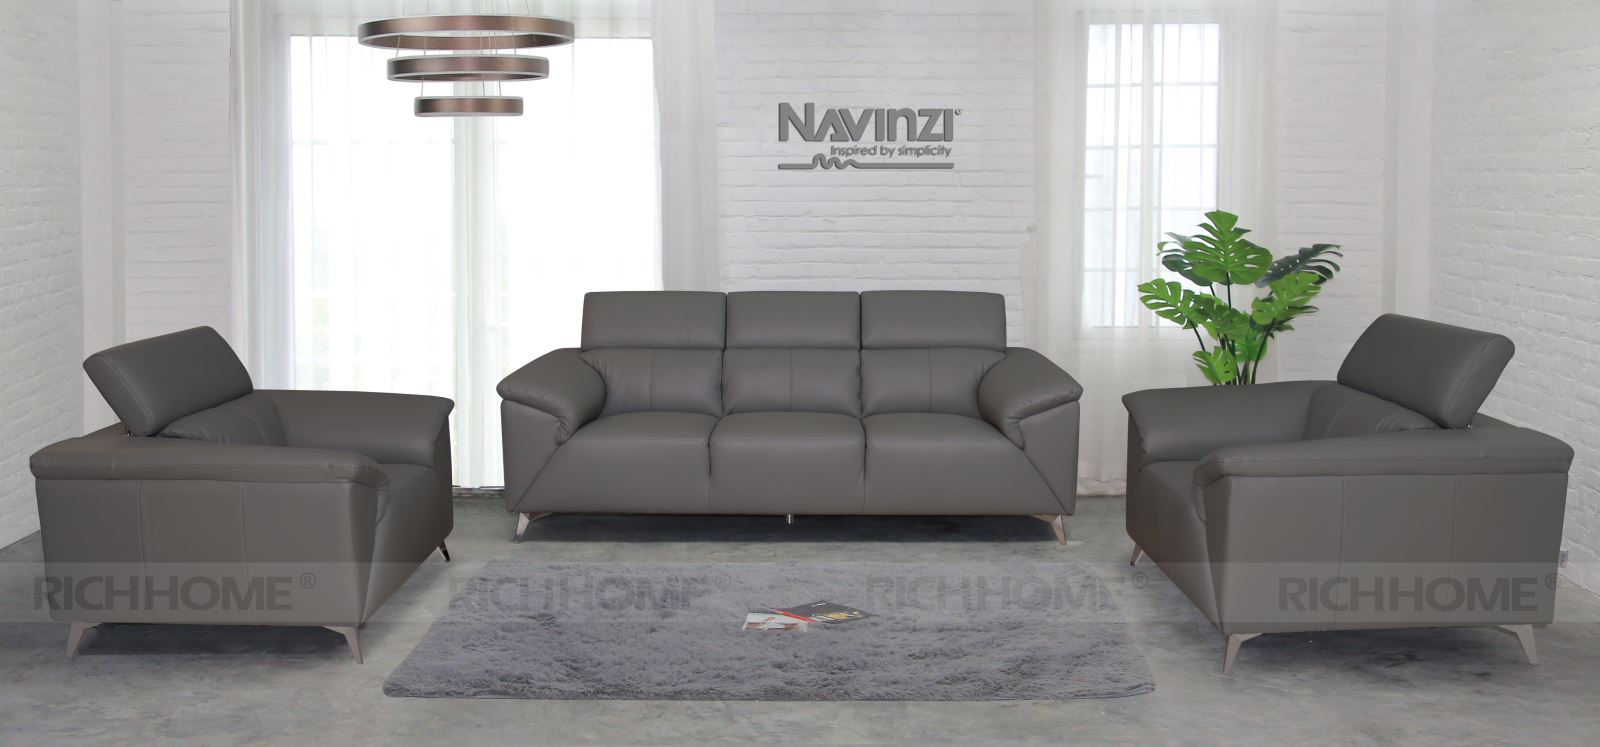 Tổng hợp các mẫu sofa đẹp 2020 dành cho văn phòng - Ảnh 8